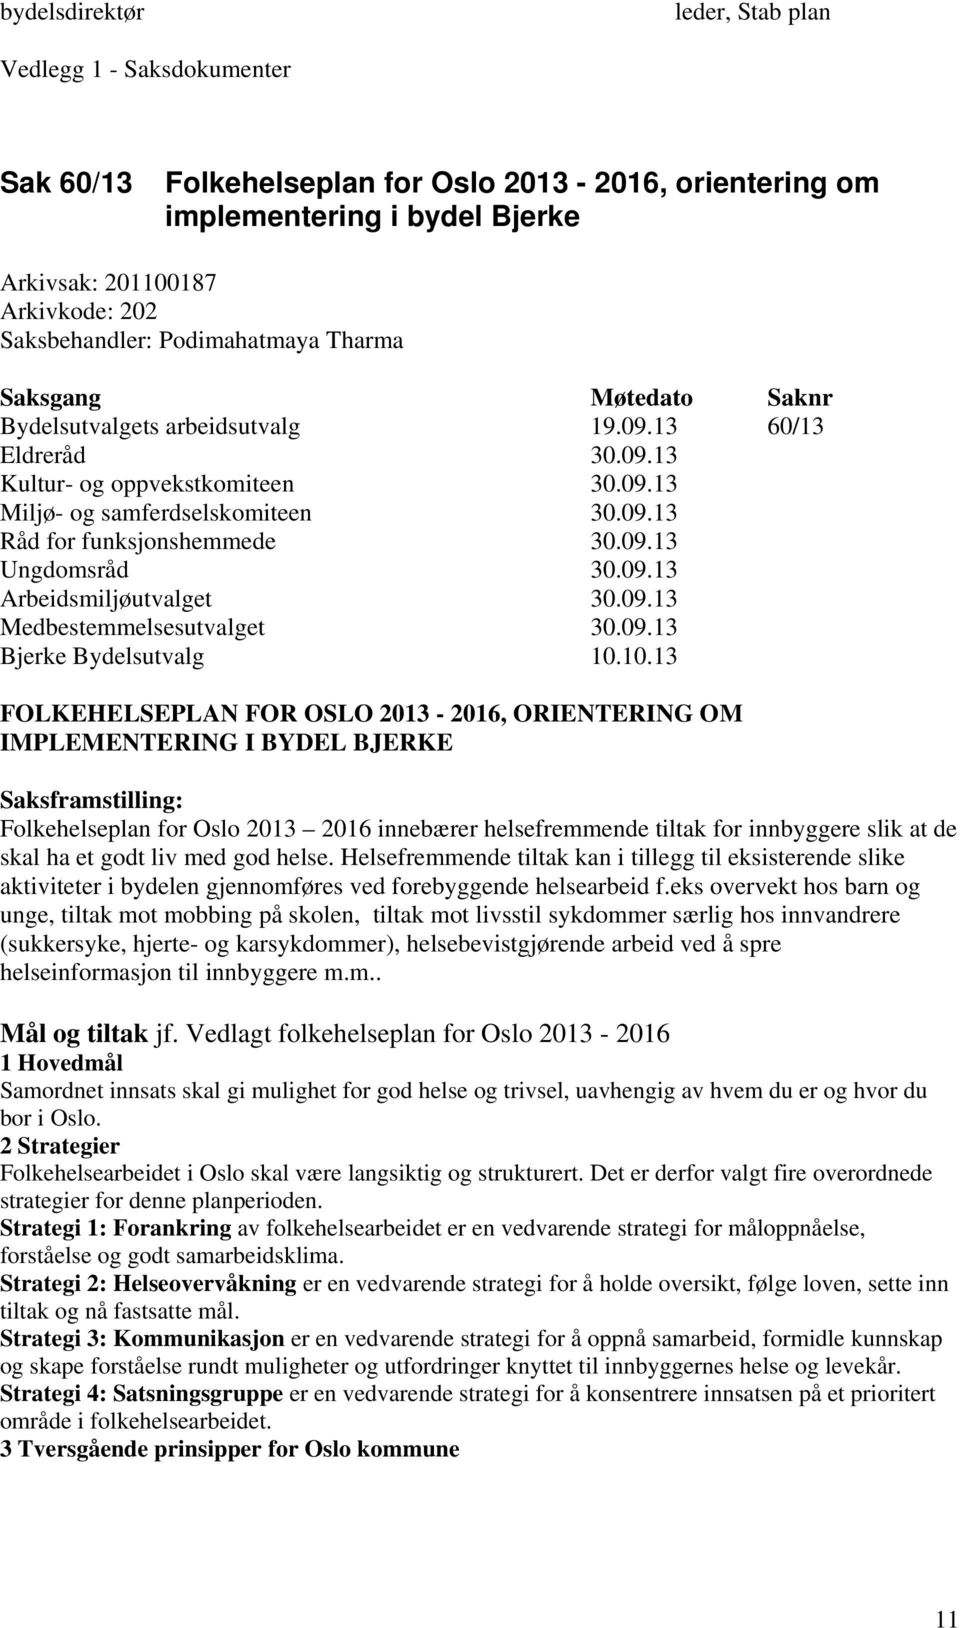 09.13 Medbestemmelsesutvalget 30.09.13 FOLKEHELSEPLAN FOR OSLO 2013-2016, ORIENTERING OM IMPLEMENTERING I BYDEL BJERKE Saksframstilling: Folkehelseplan for Oslo 2013 2016 innebærer helsefremmende